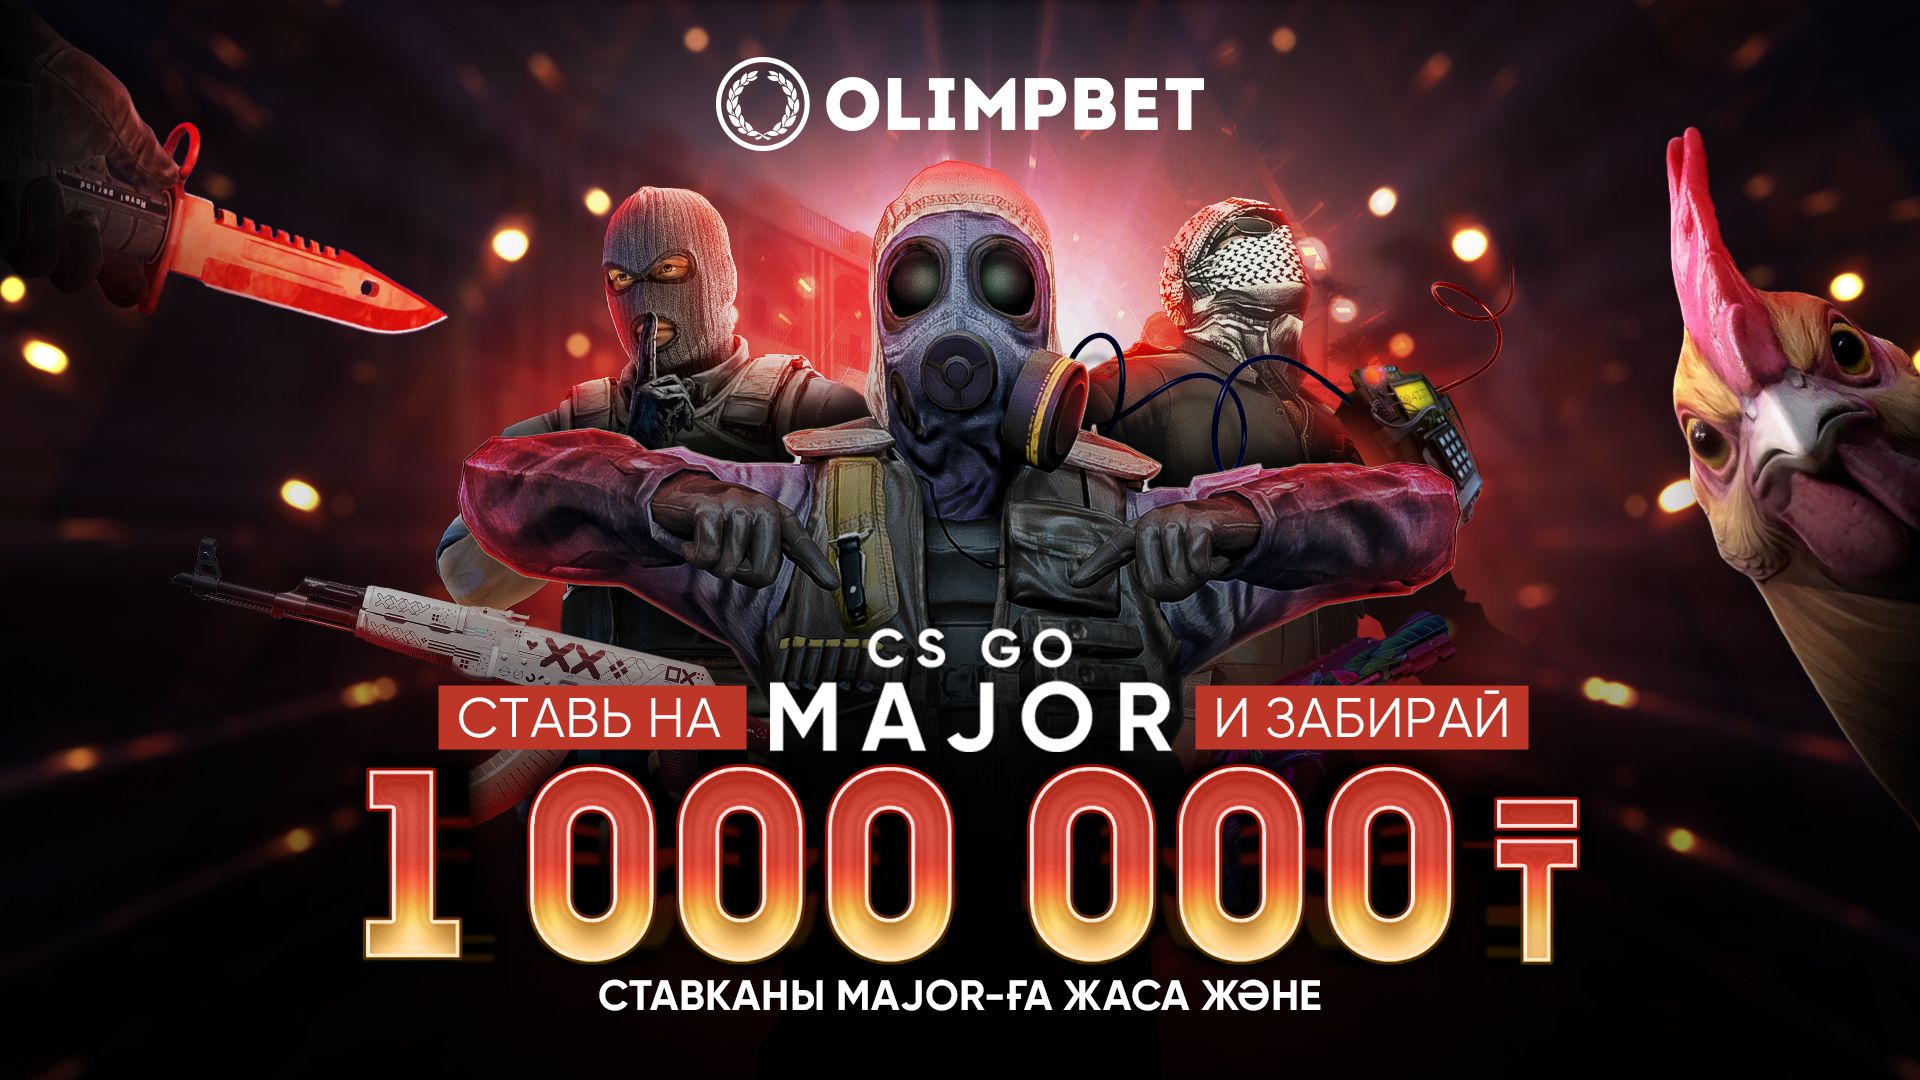 Olimpbet разыграет миллион тенге среди бетторов на IEM Rio Major 2022 по CS:GO